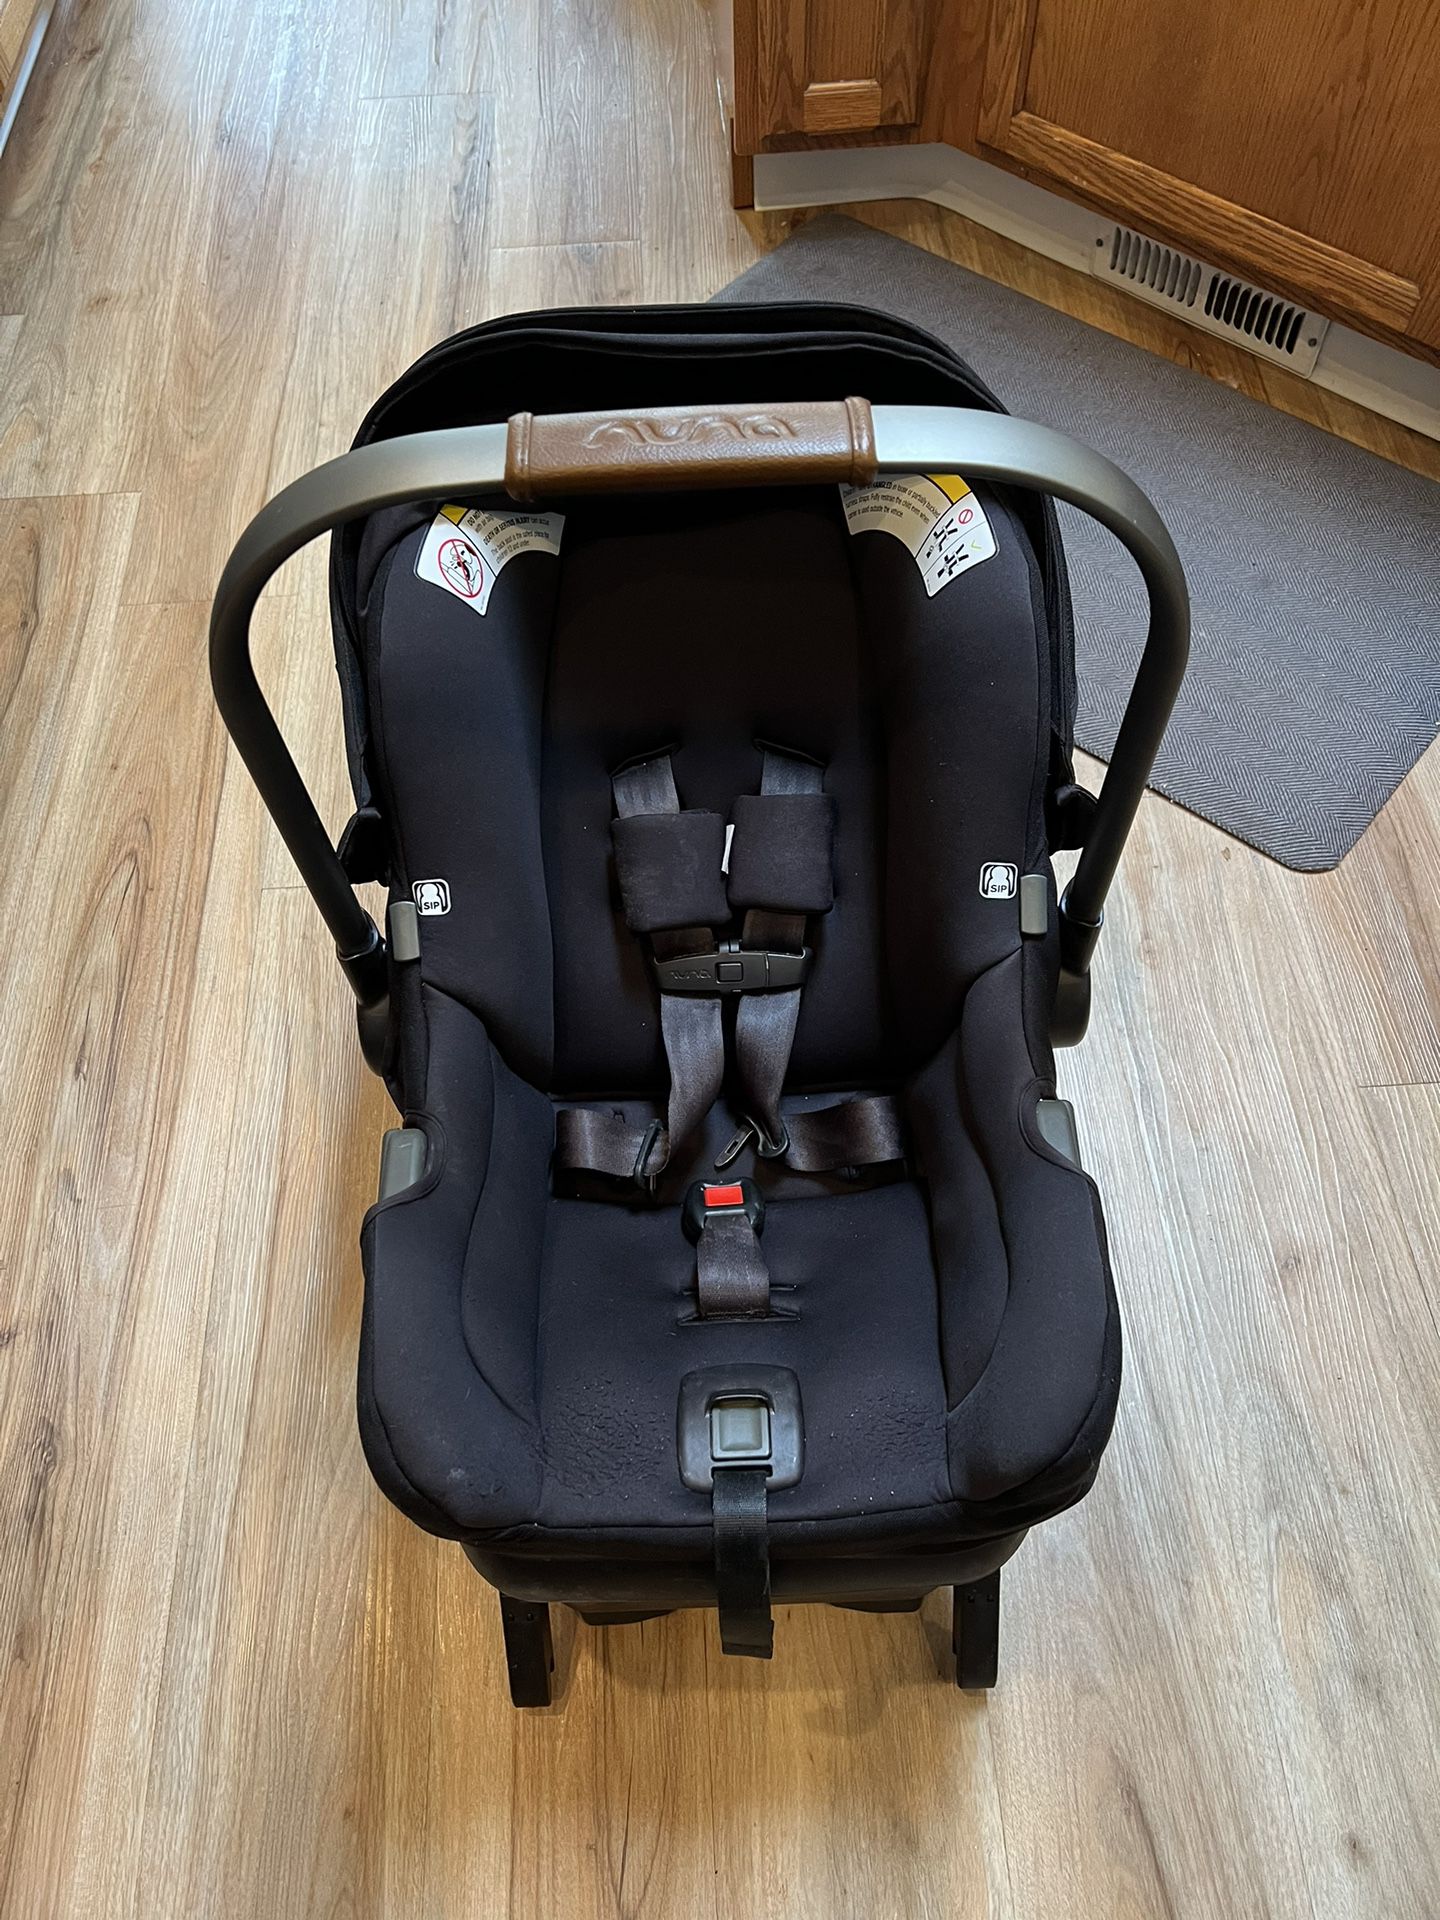 Nuna Car Seat Stroller Travel System 